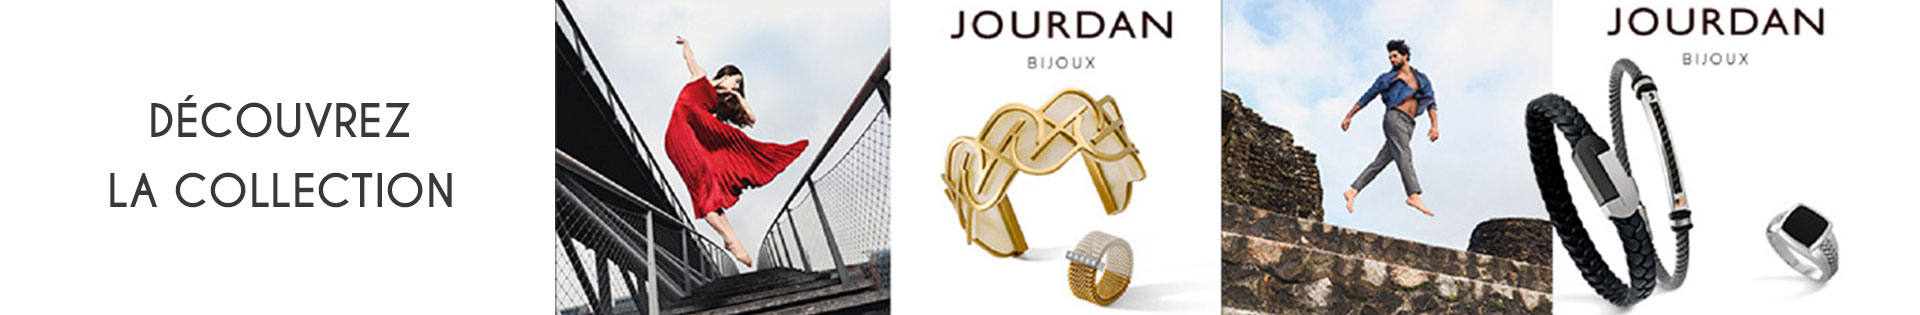 Marques de bijoux - Homme - Jourdan Bijoux - Argent - Bague